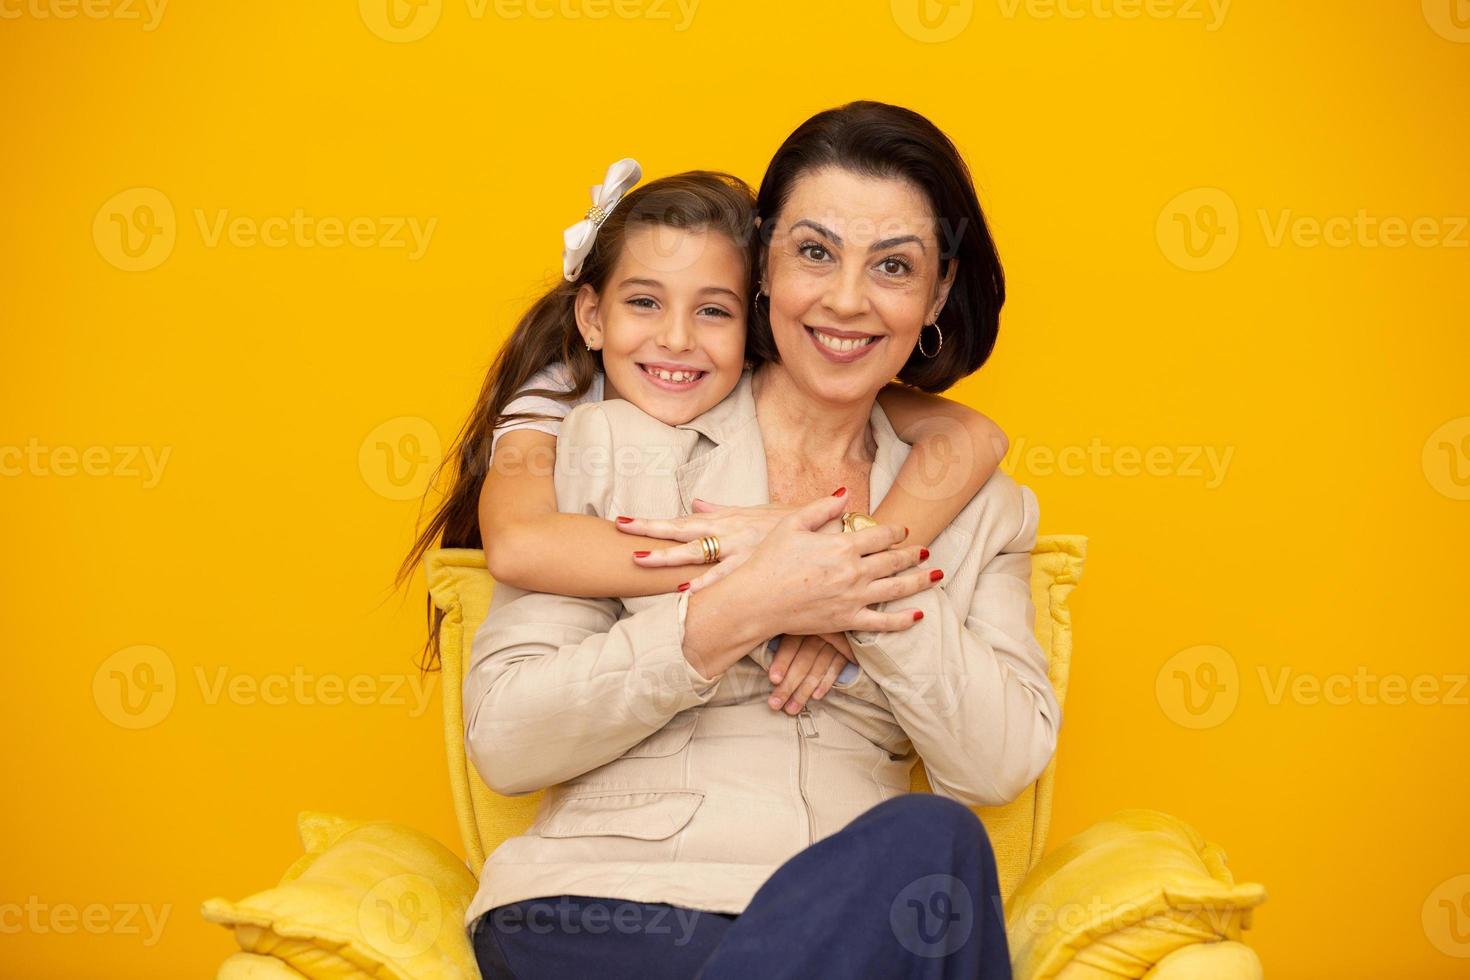 feliz dia das mães close-up retrato de linda, encantadora mãe e filha com sorrisos radiantes sobre fundo amarelo. filha abraçando a mãe em fundo amarelo. foto